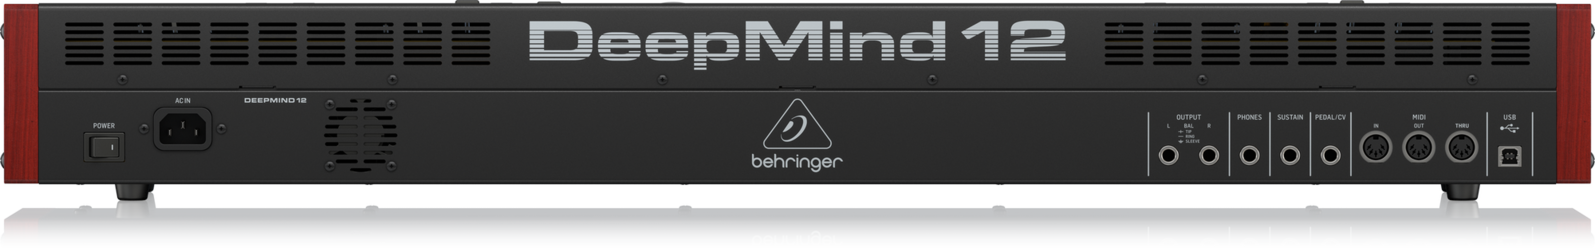 Behringer DeepMind 12